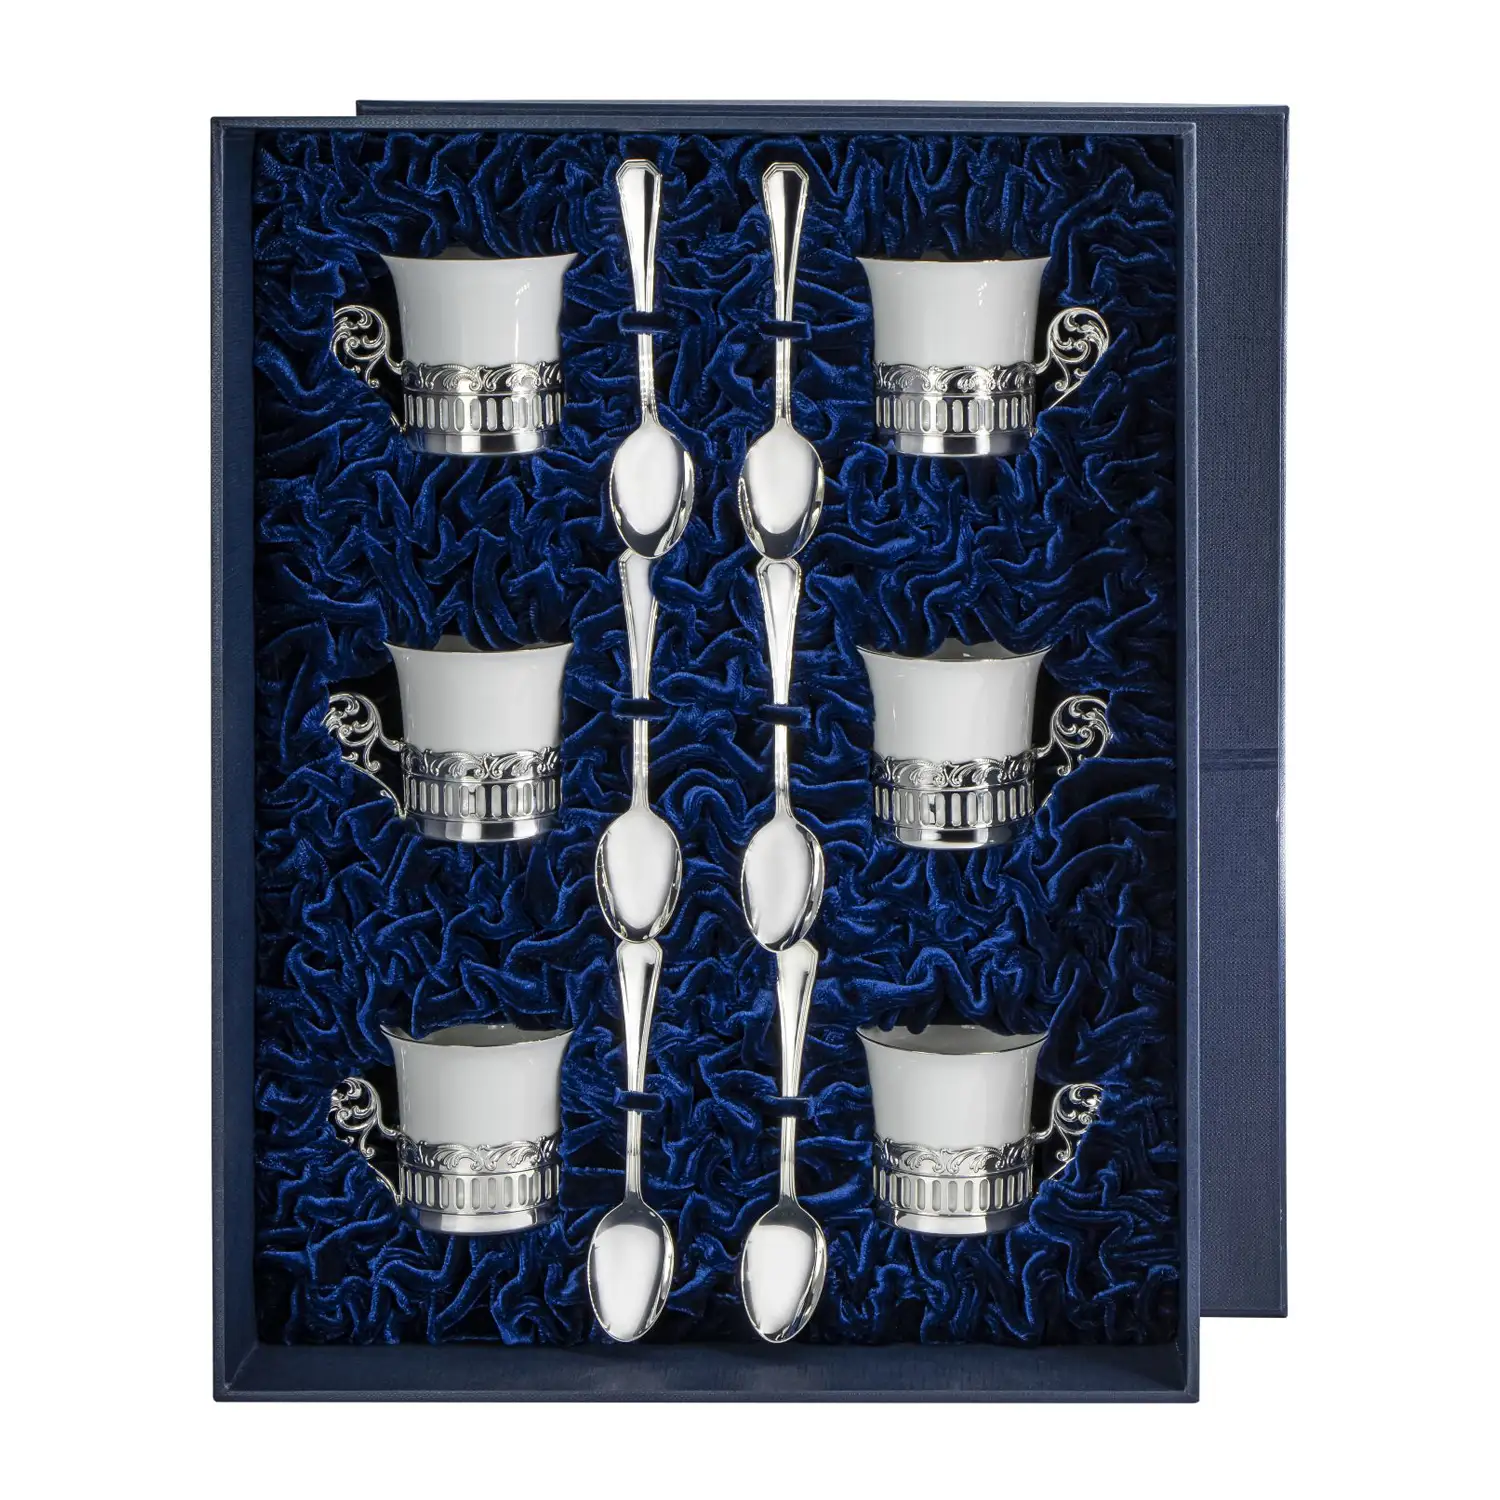 Набор кофейных чашек Богема: ложка, чашка на 6 персон (Серебро 925) набор кофейных чашек богема блюдце чашка серебро 925